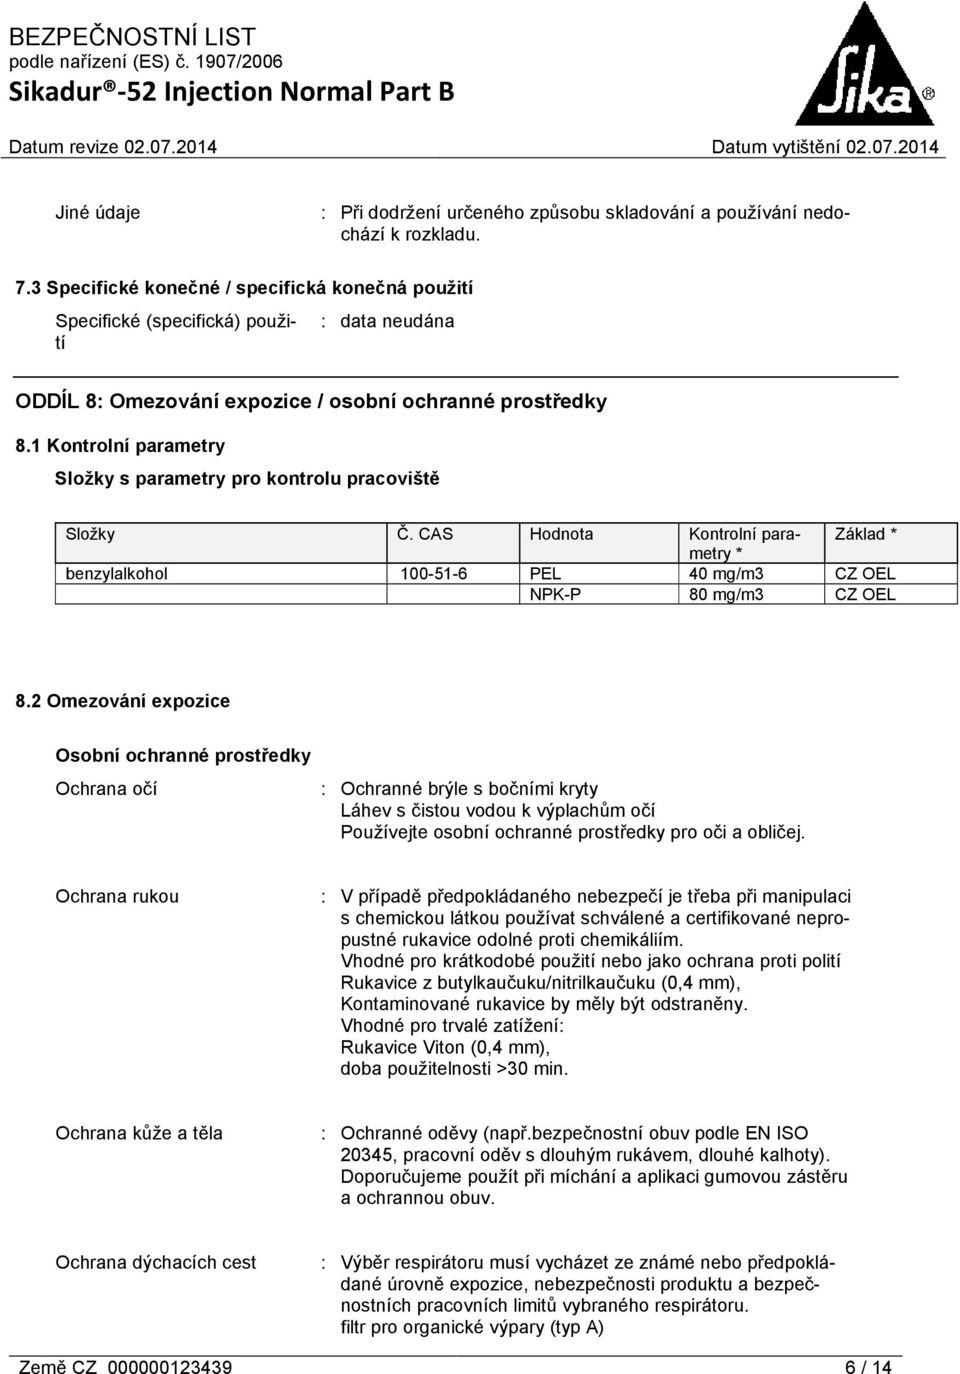 1 Kontrolní parametry Složky s parametry pro kontrolu pracoviště Složky Č. CAS Hodnota Kontrolní parametry Základ * * benzylalkohol 100-51-6 PEL 40 mg/m3 CZ OEL NPK-P 80 mg/m3 CZ OEL 8.